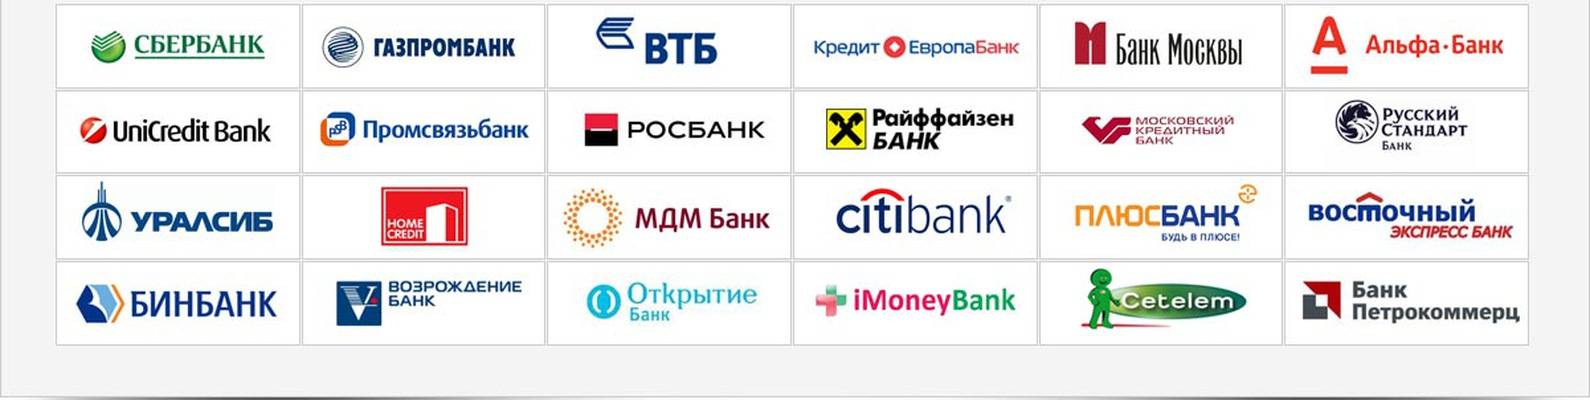 Партнеры хоум кредит банка: полный список магазинов-партнеров по карте рассрочки и банков для снятия без комиссии